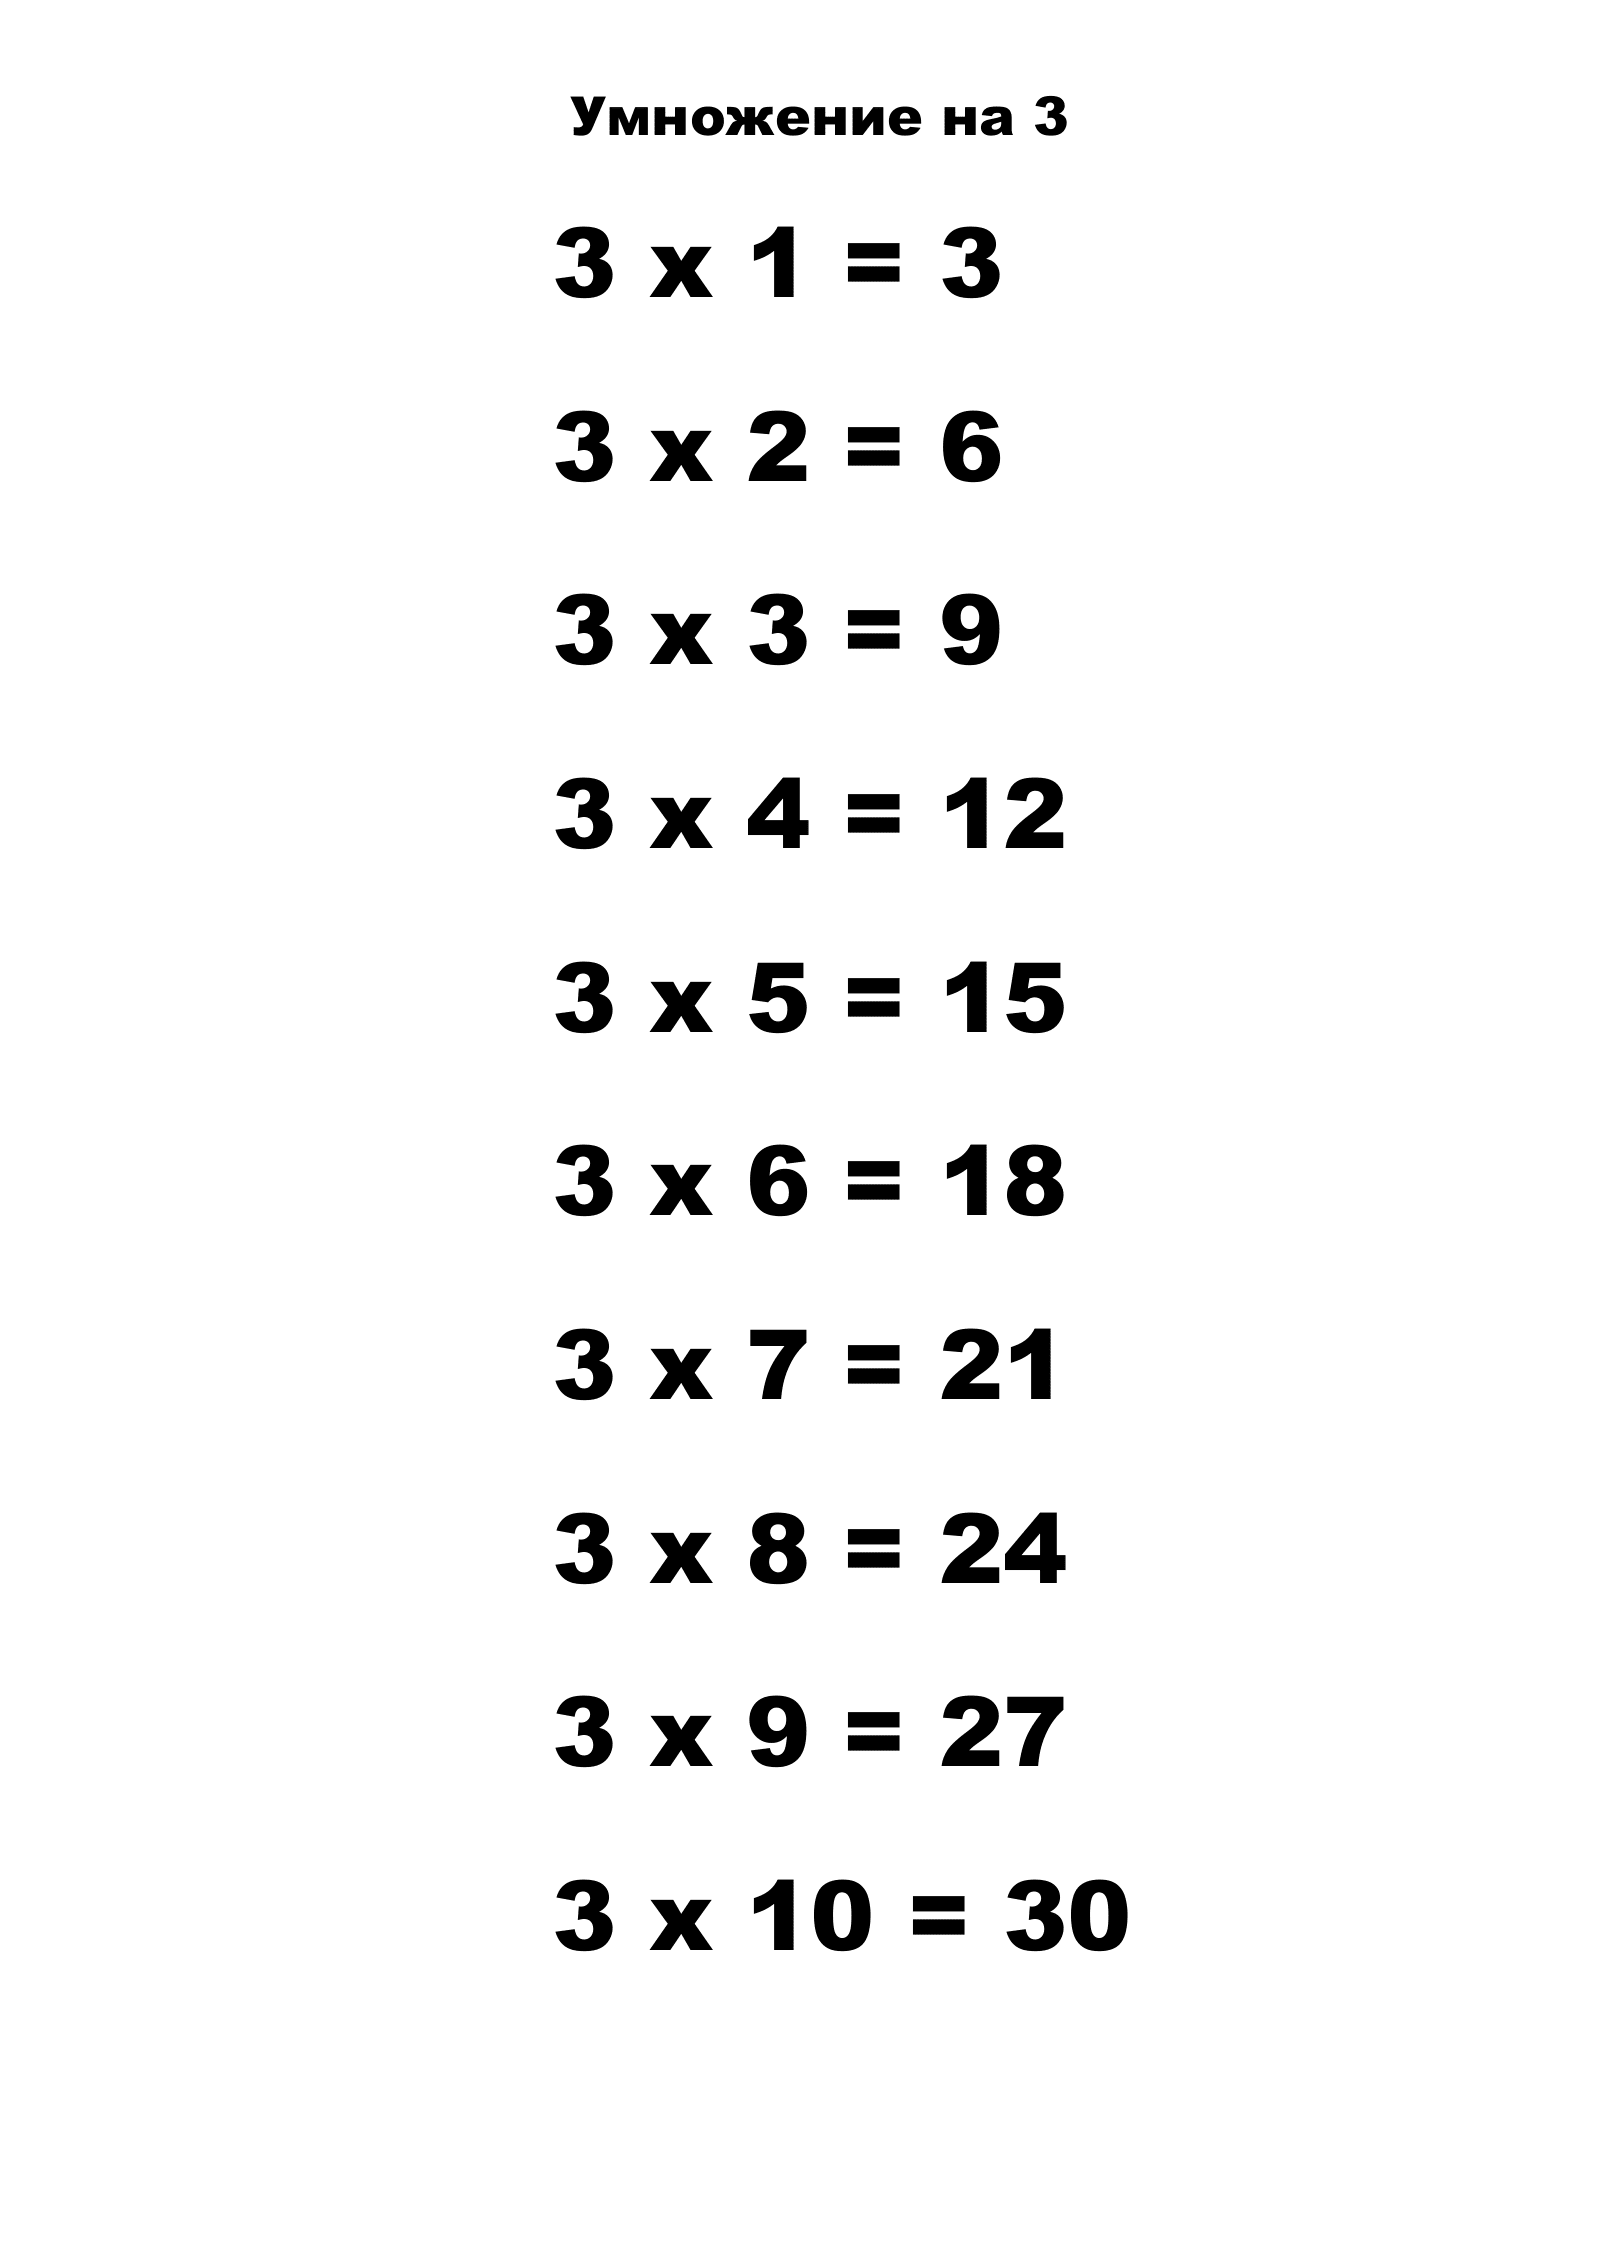 Таблица умножения на 3.